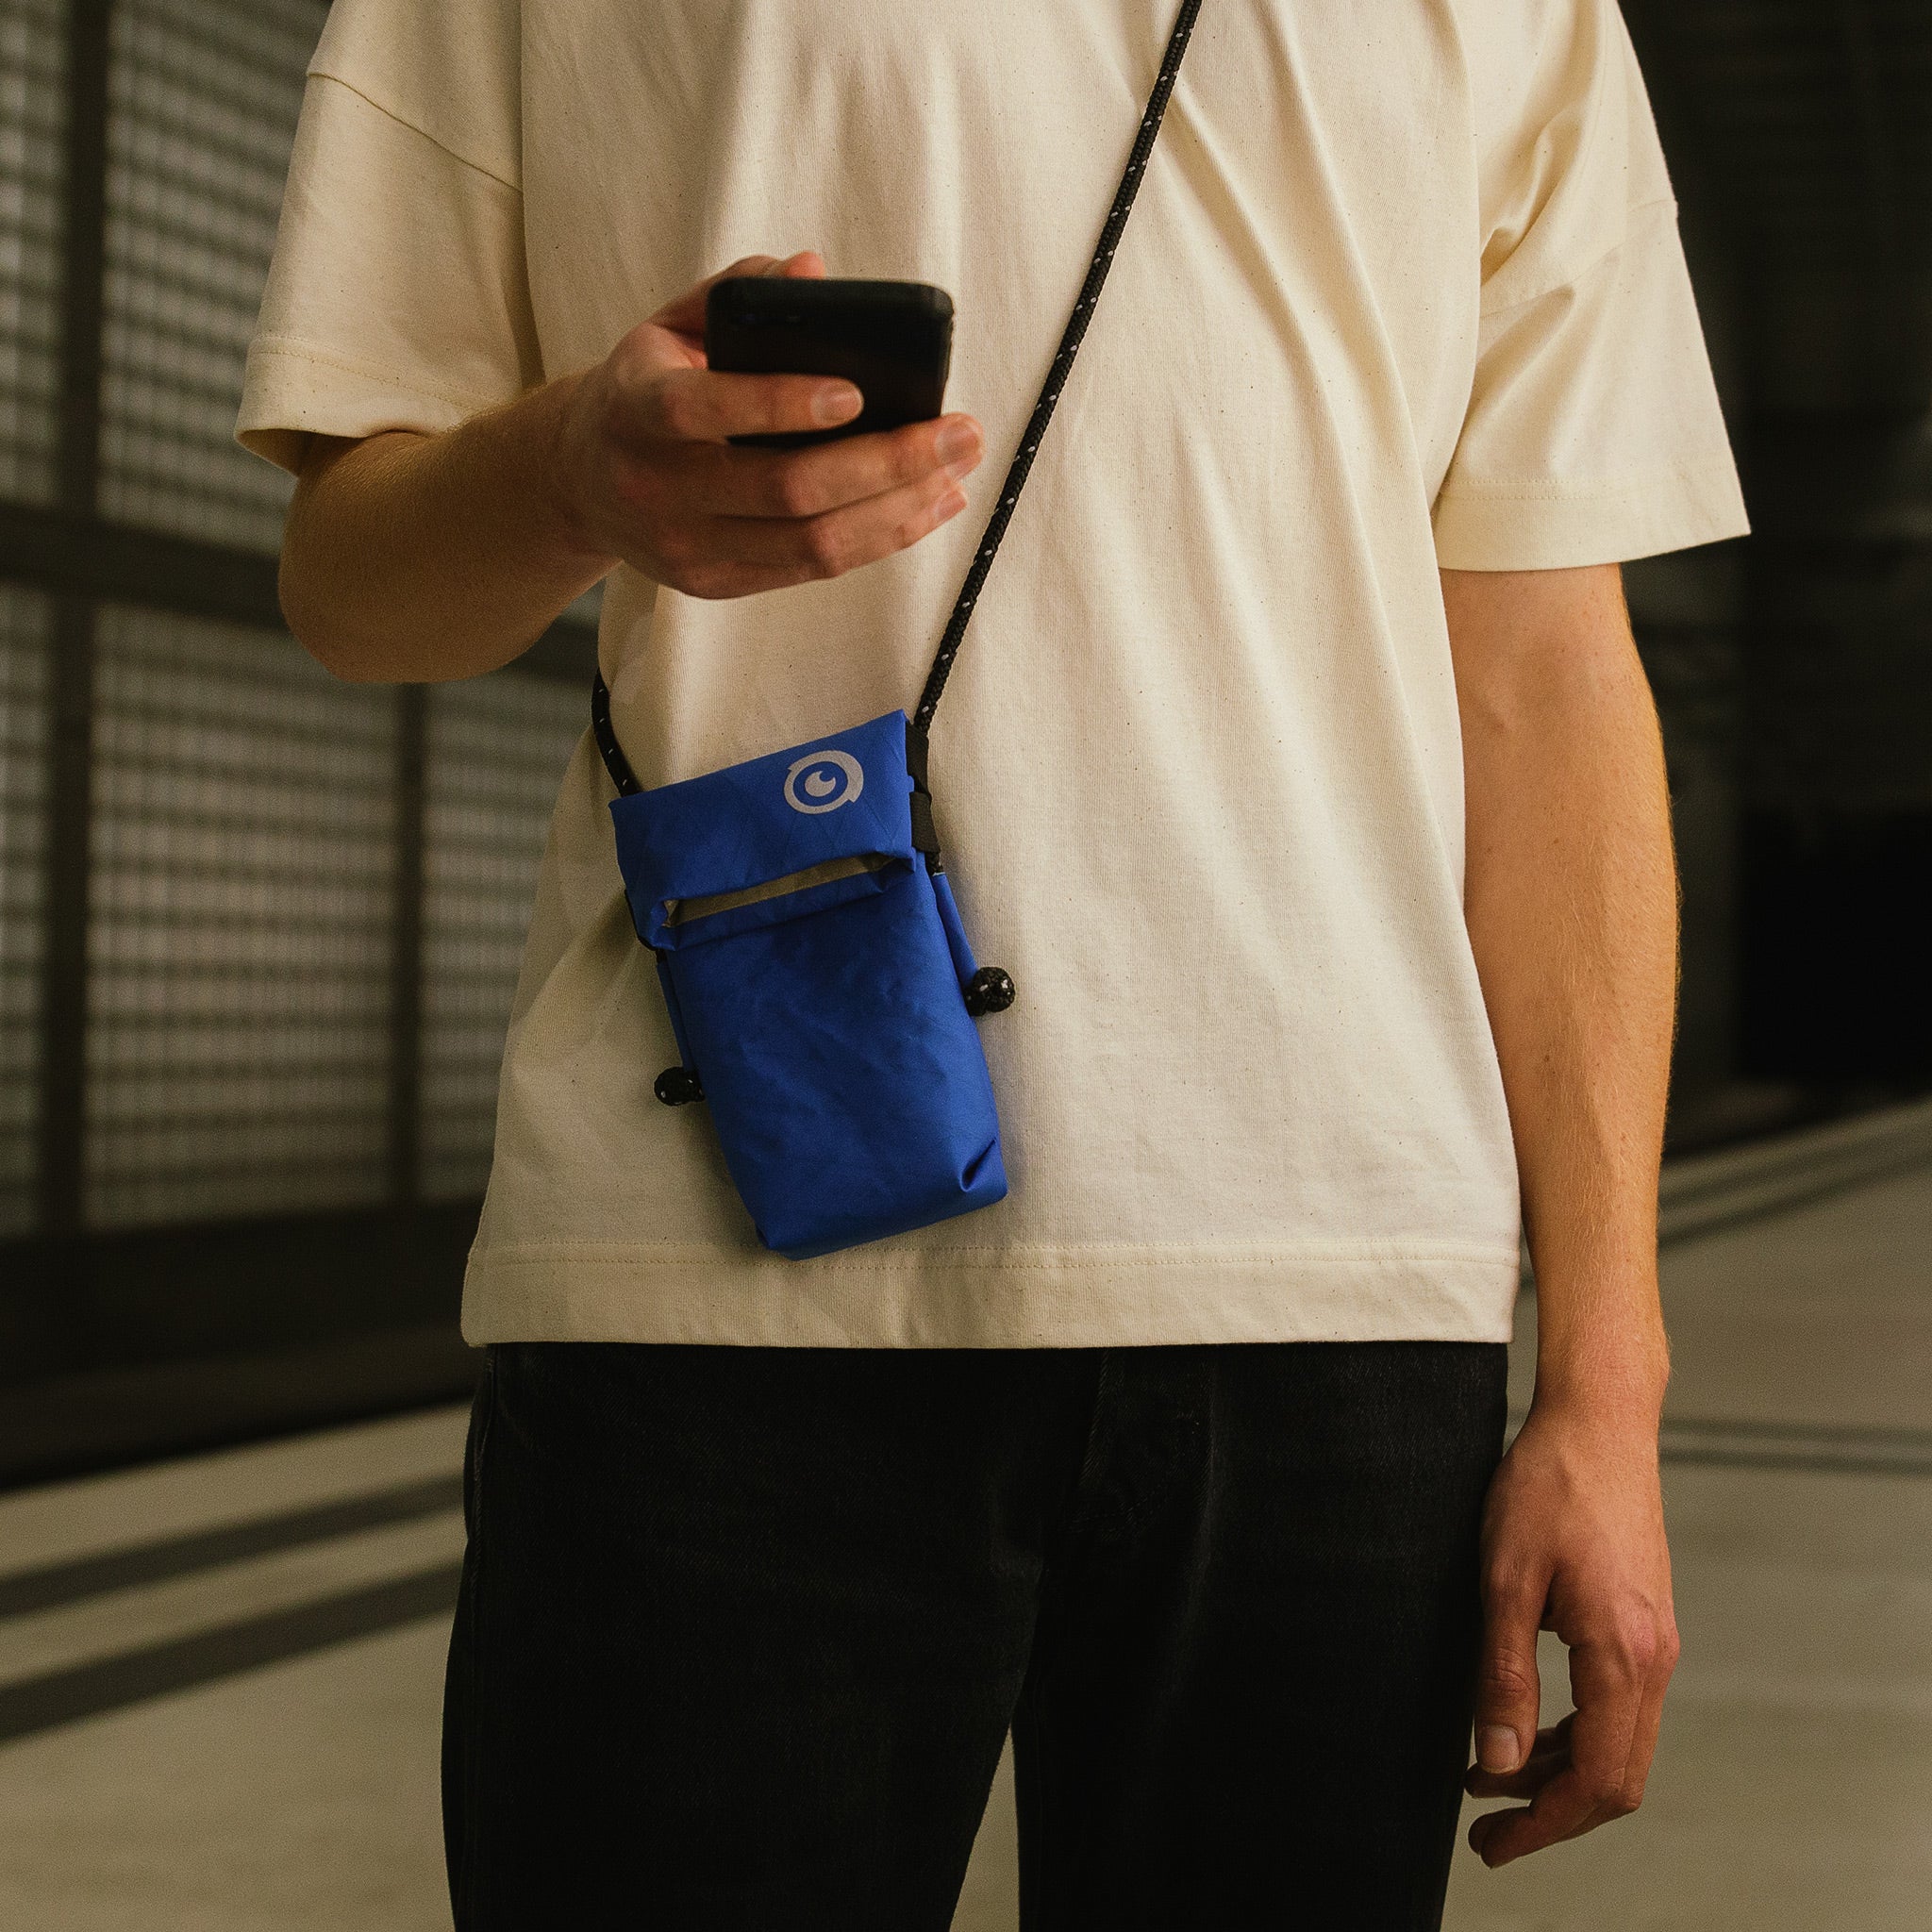 Ein Mann hält sein Handy in der Hand und trägt eine blaue abschirmende Umhängetasche von Urbanprivacy